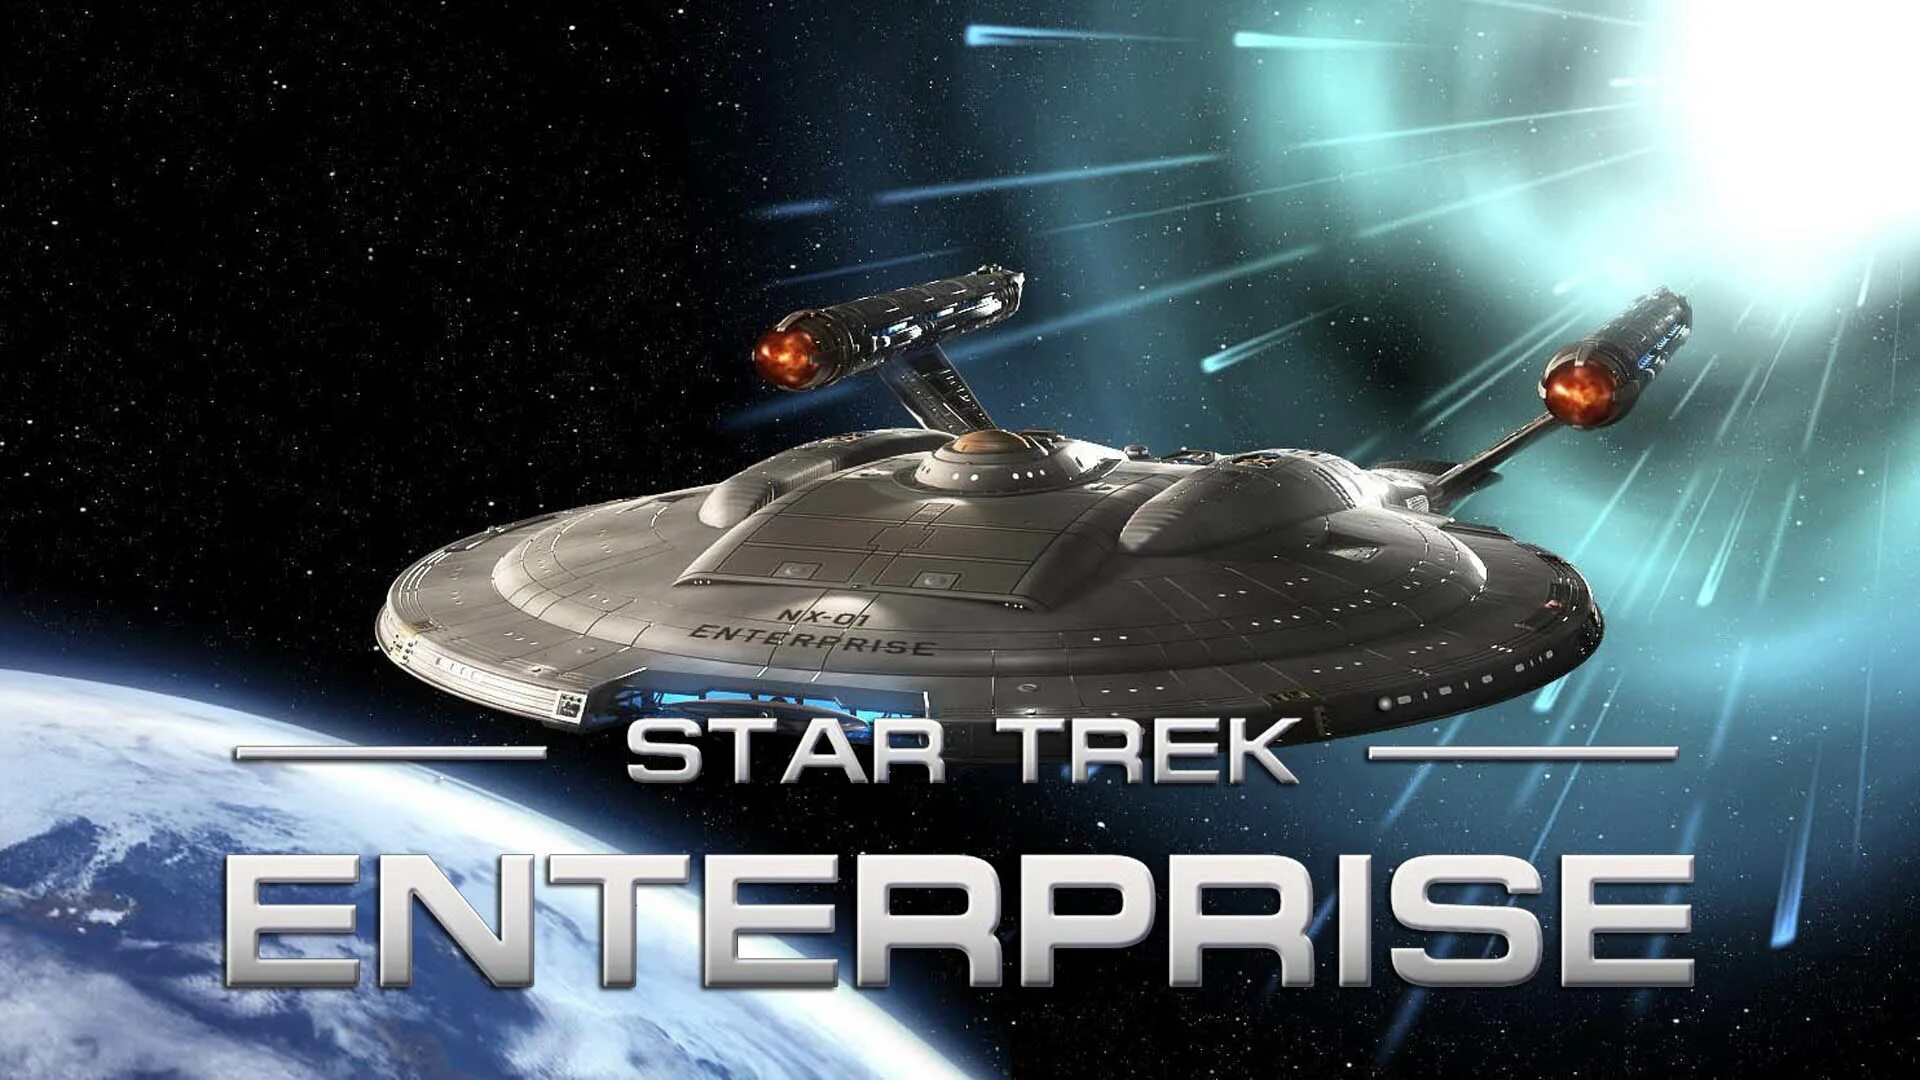 Enterprise egamers. Звёздный путь: Энтерпра́йз. Star Trek Enterprise.